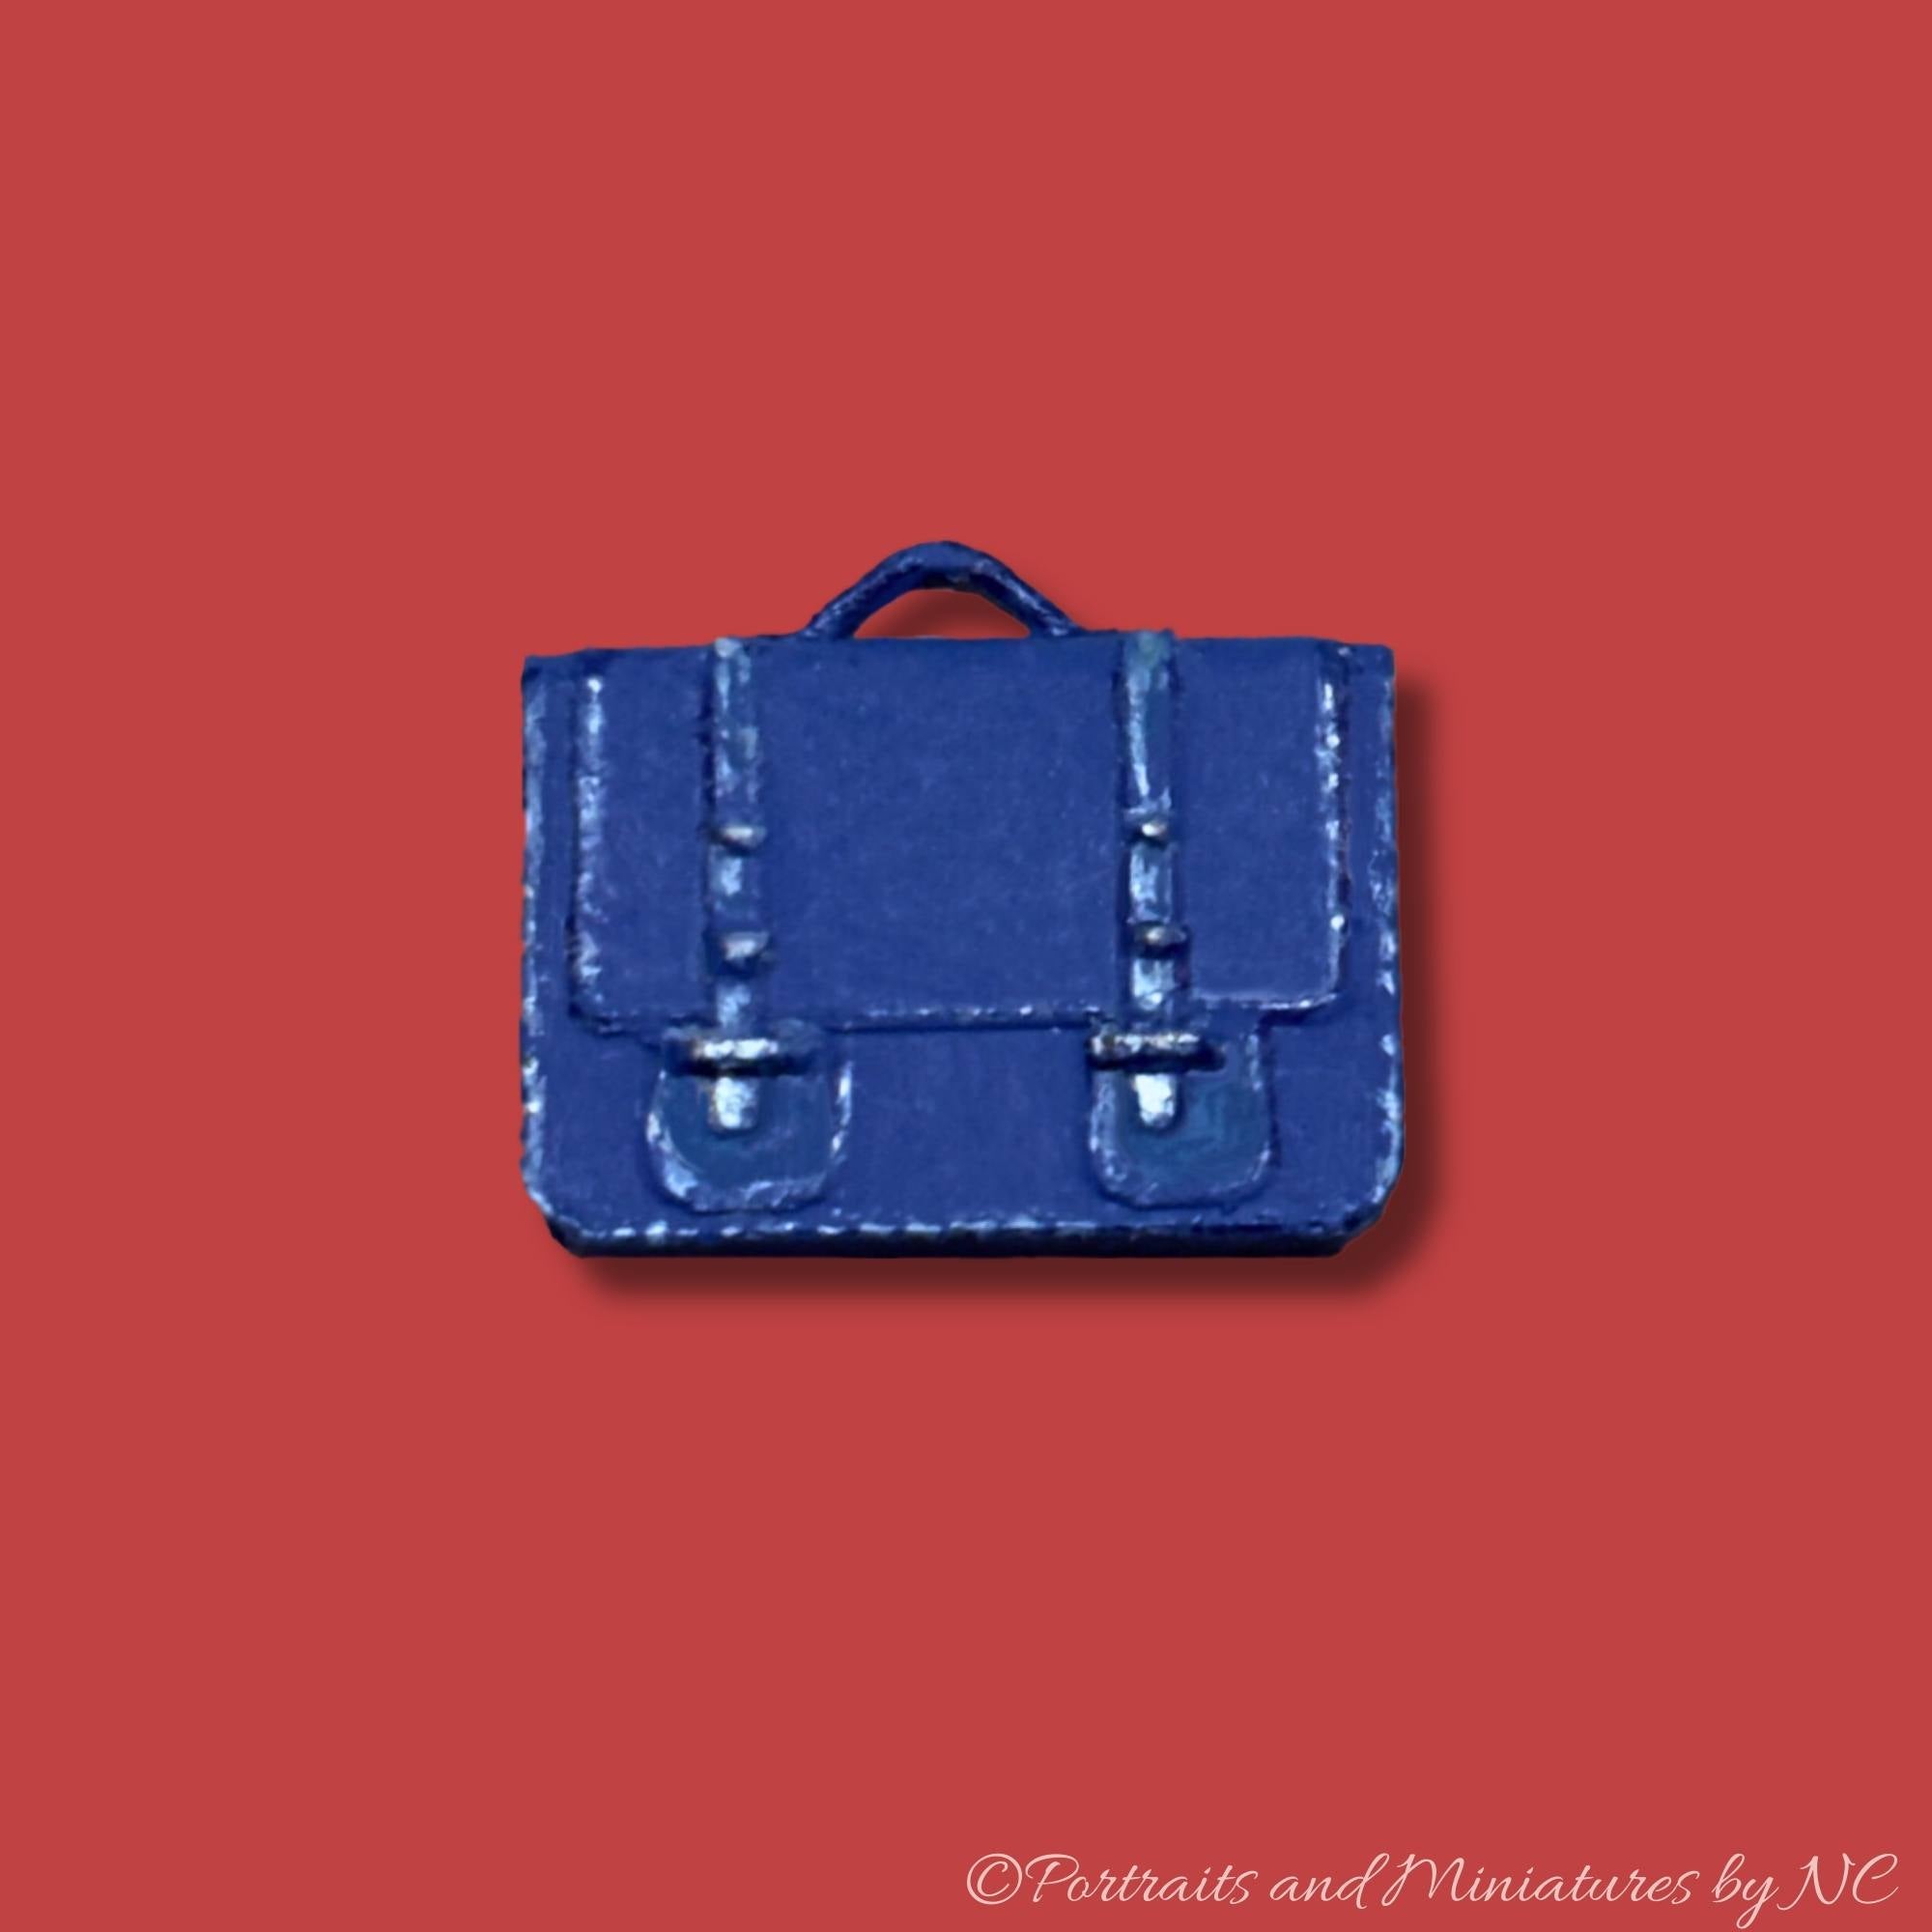 Miniature Blue briefcase